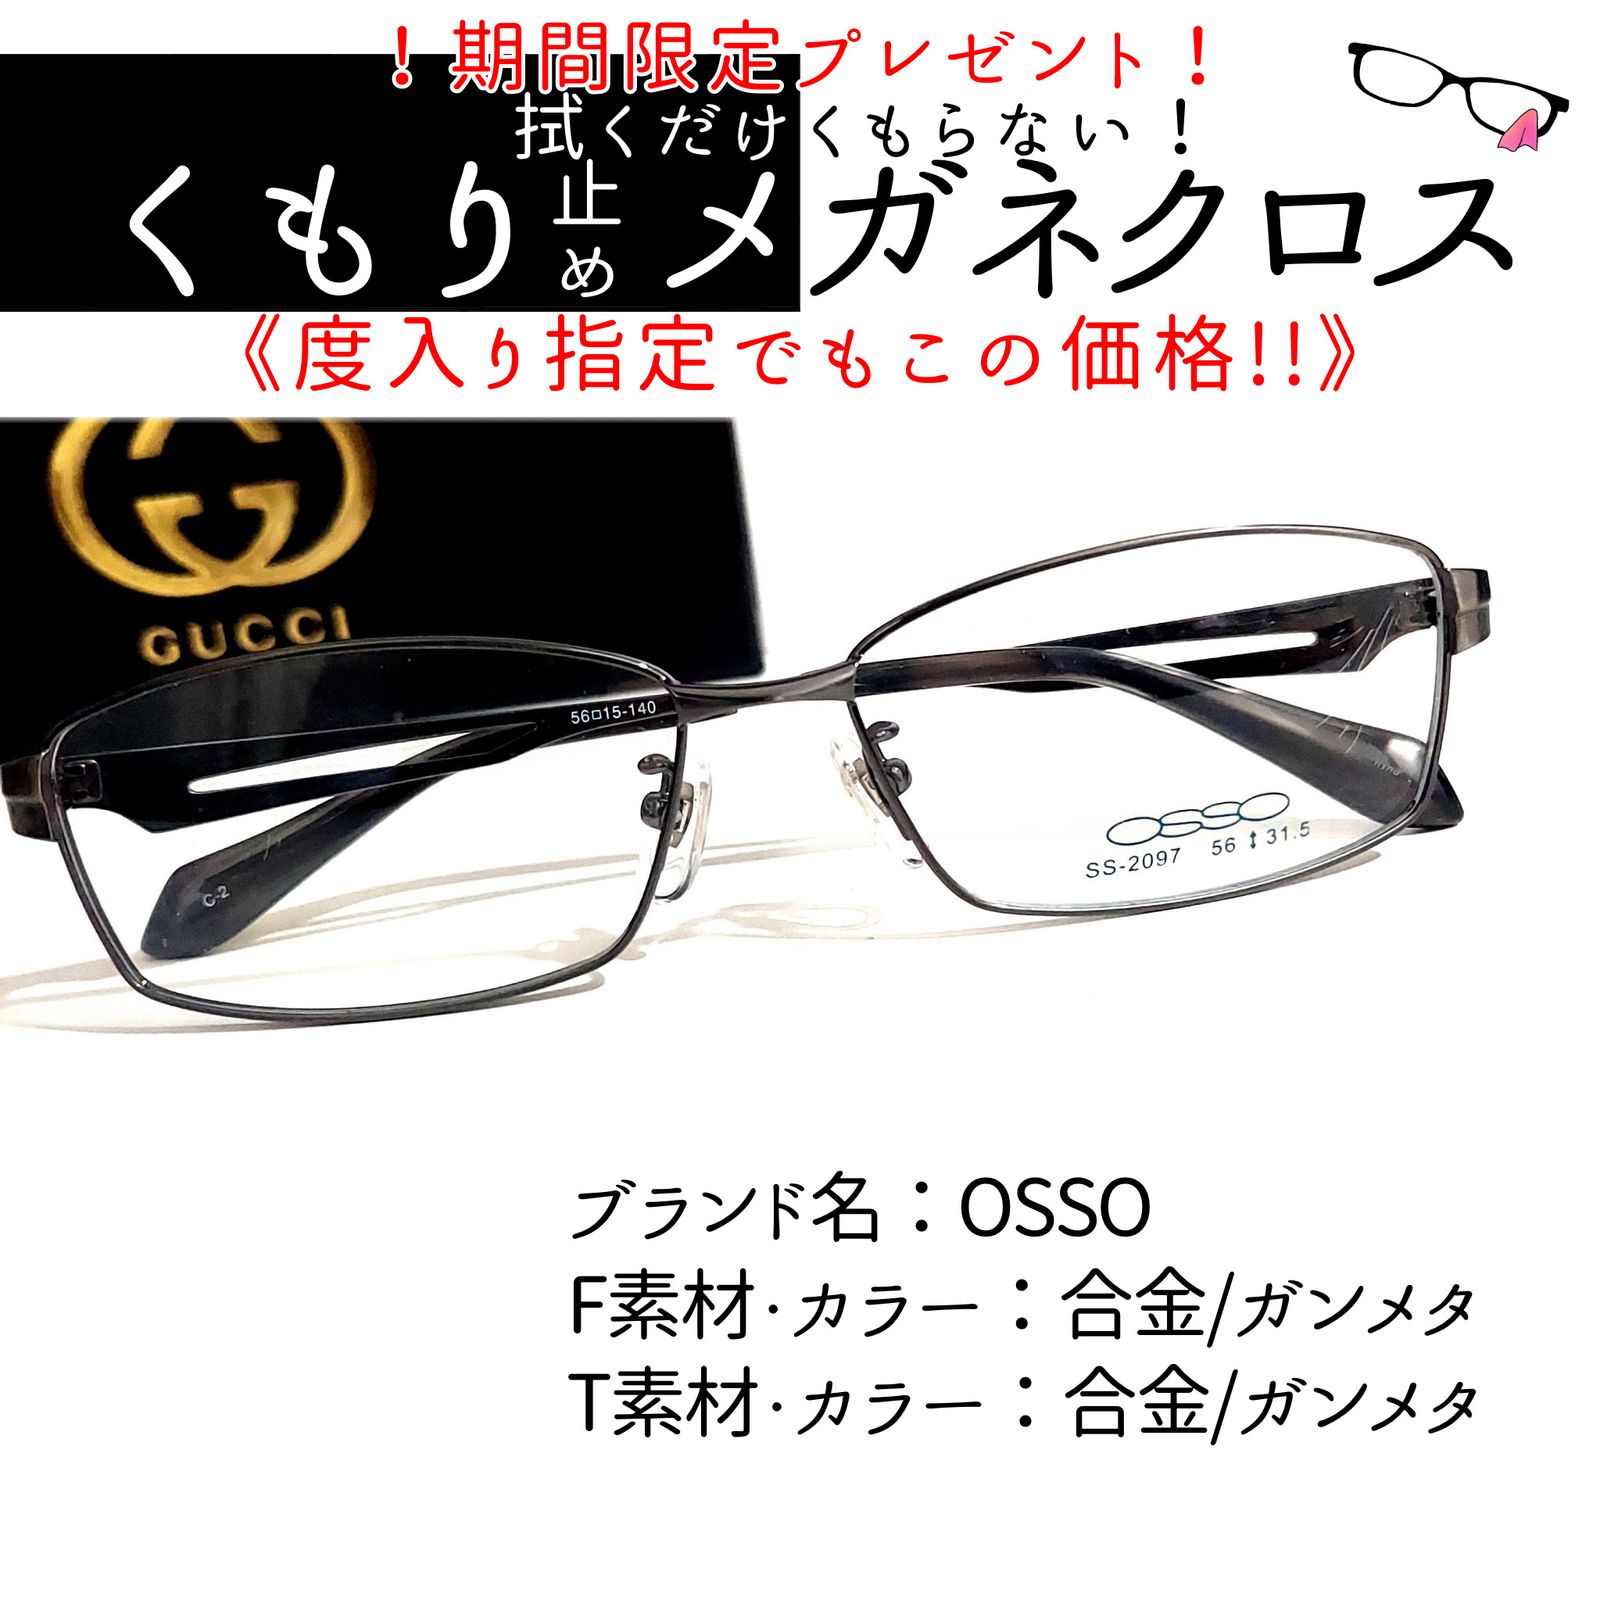 No.1950+メガネ OSSO【度数入り込み価格】 - サングラス/メガネ